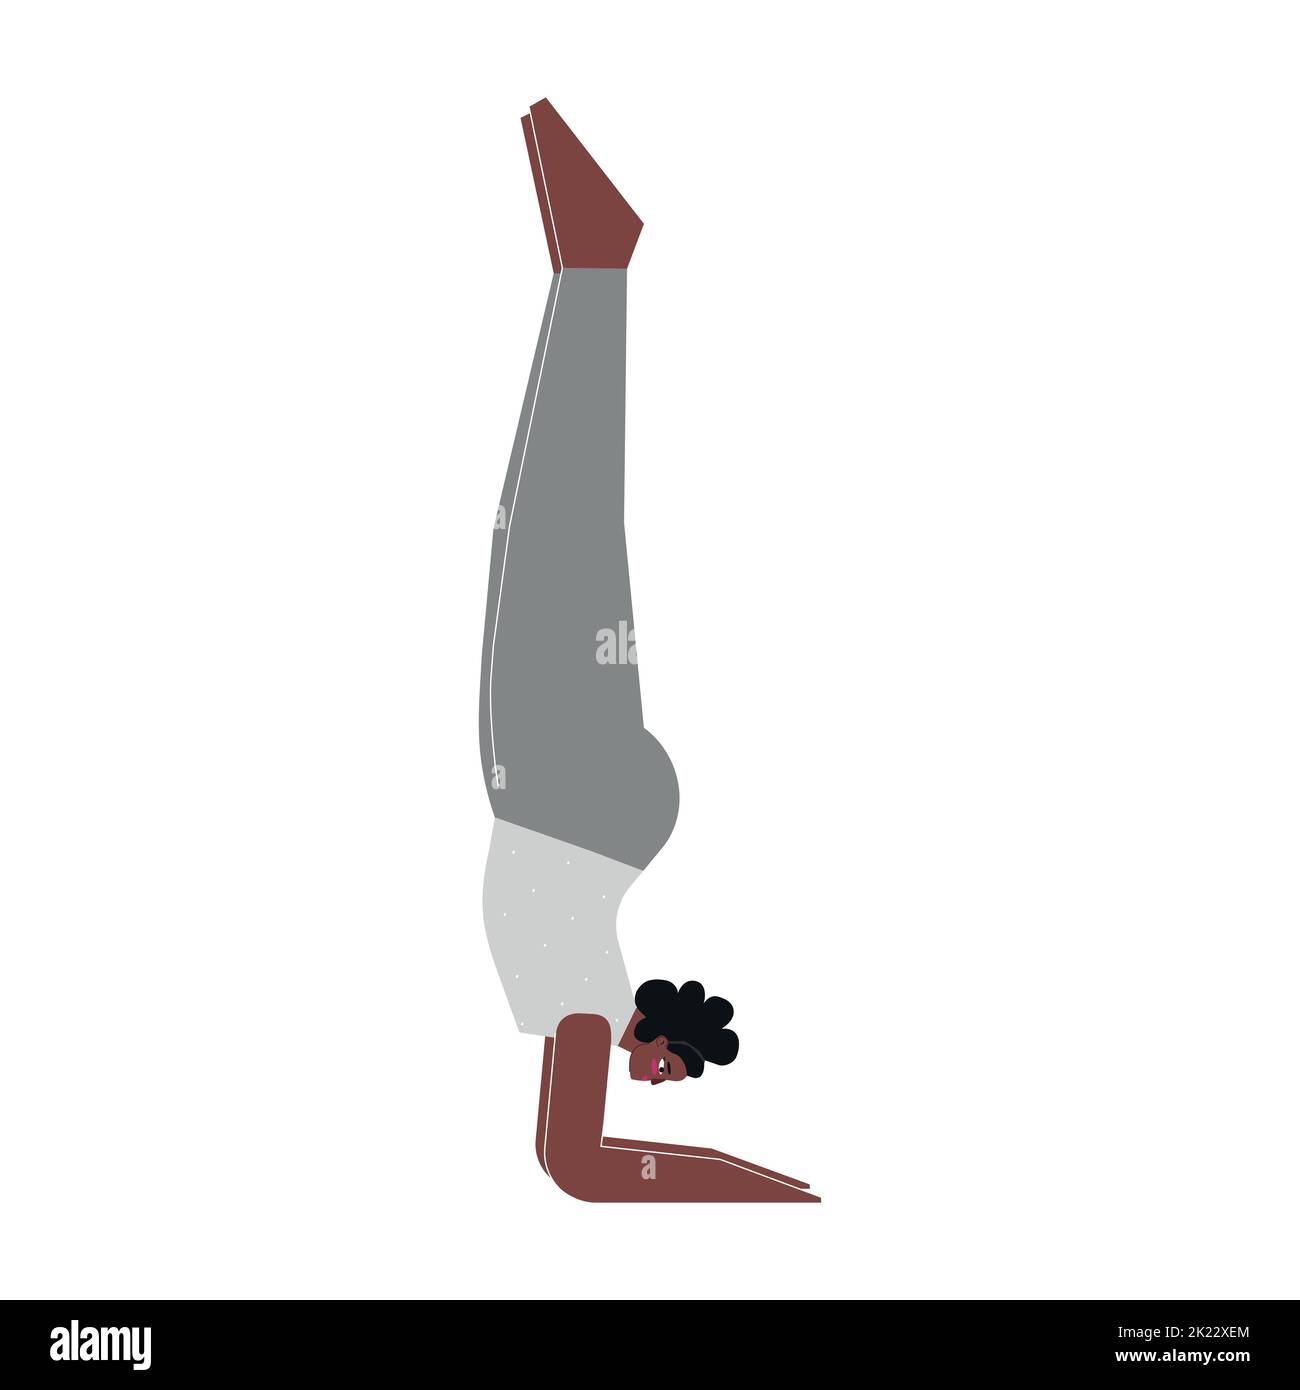 Vektor-isolierte Illustration mit flachem weiblichen Charakter. Sportliche afroamerikanerin; Frau lernt Haltung im Yoga-Kurs. Fitness-Übung - Unterarm Sta Stock Vektor